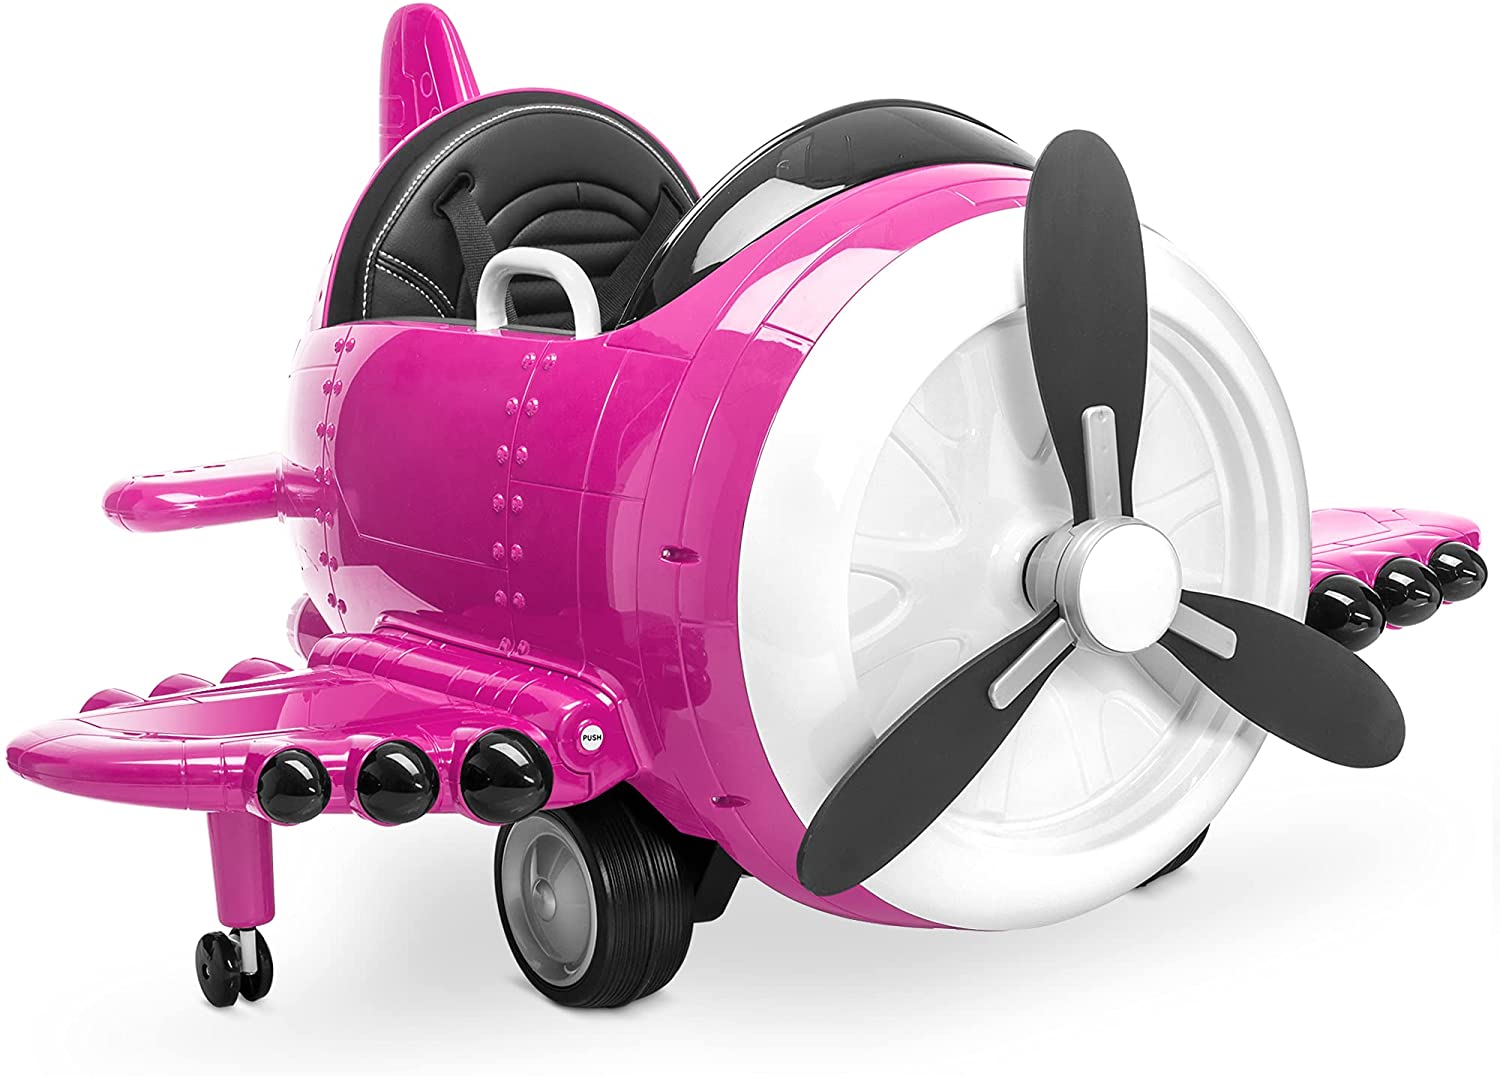 Avião Planador com Luz Bateria Recarregável USB Brinquedo Infantil Dia das  Crianças - Escorrega o Preço